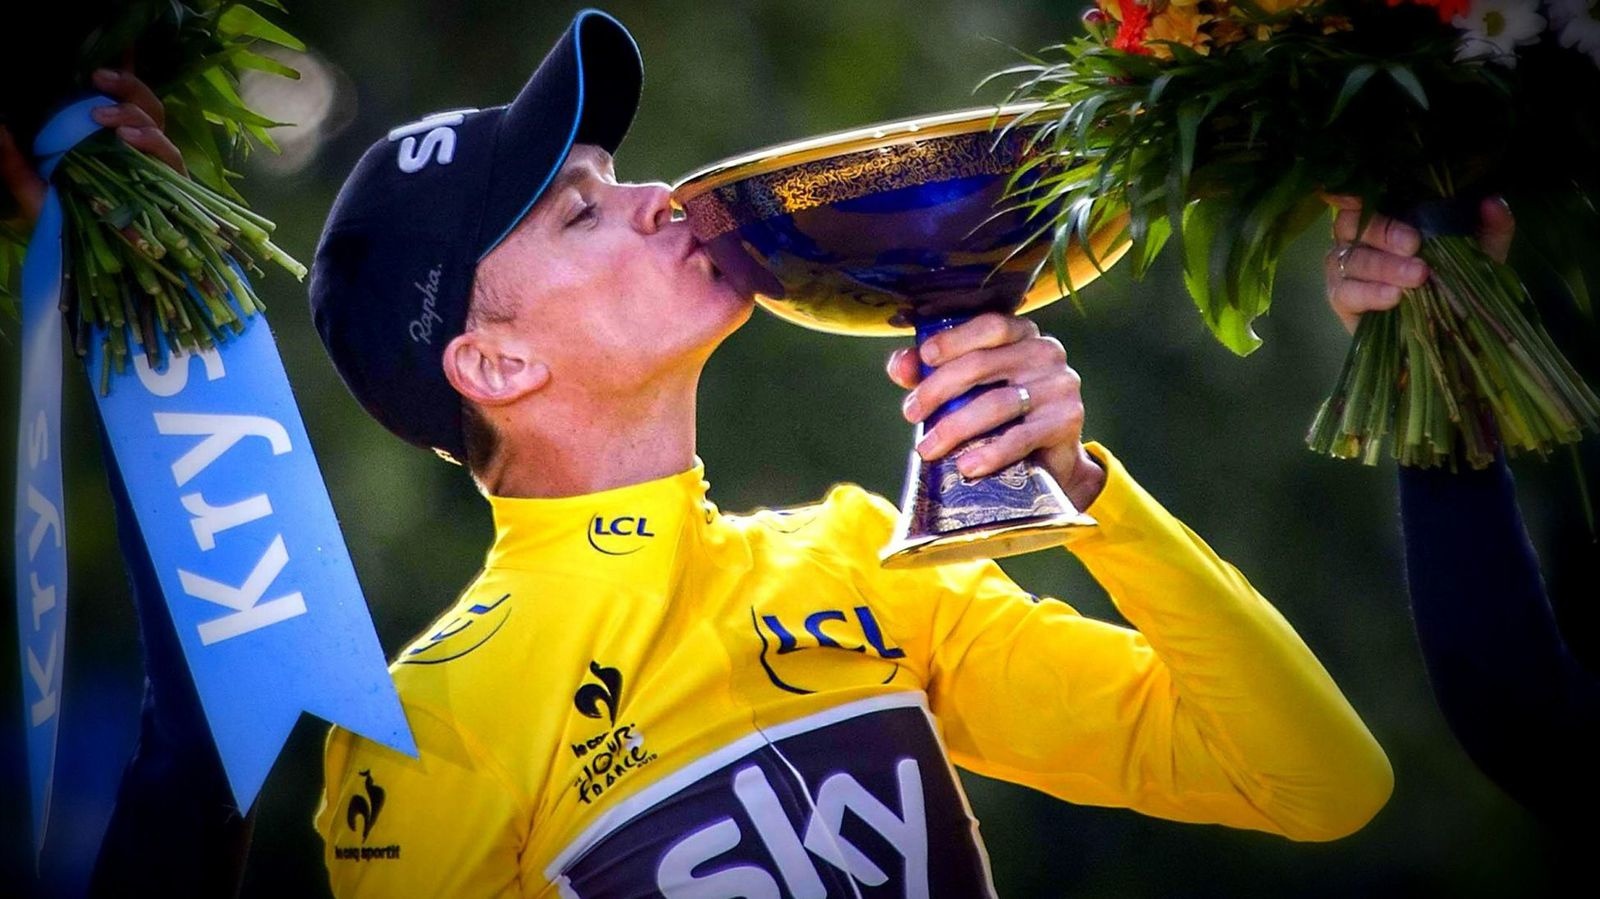 Les résultats du Tour de France 2016 et le nouveau sacre de Christopher Froome